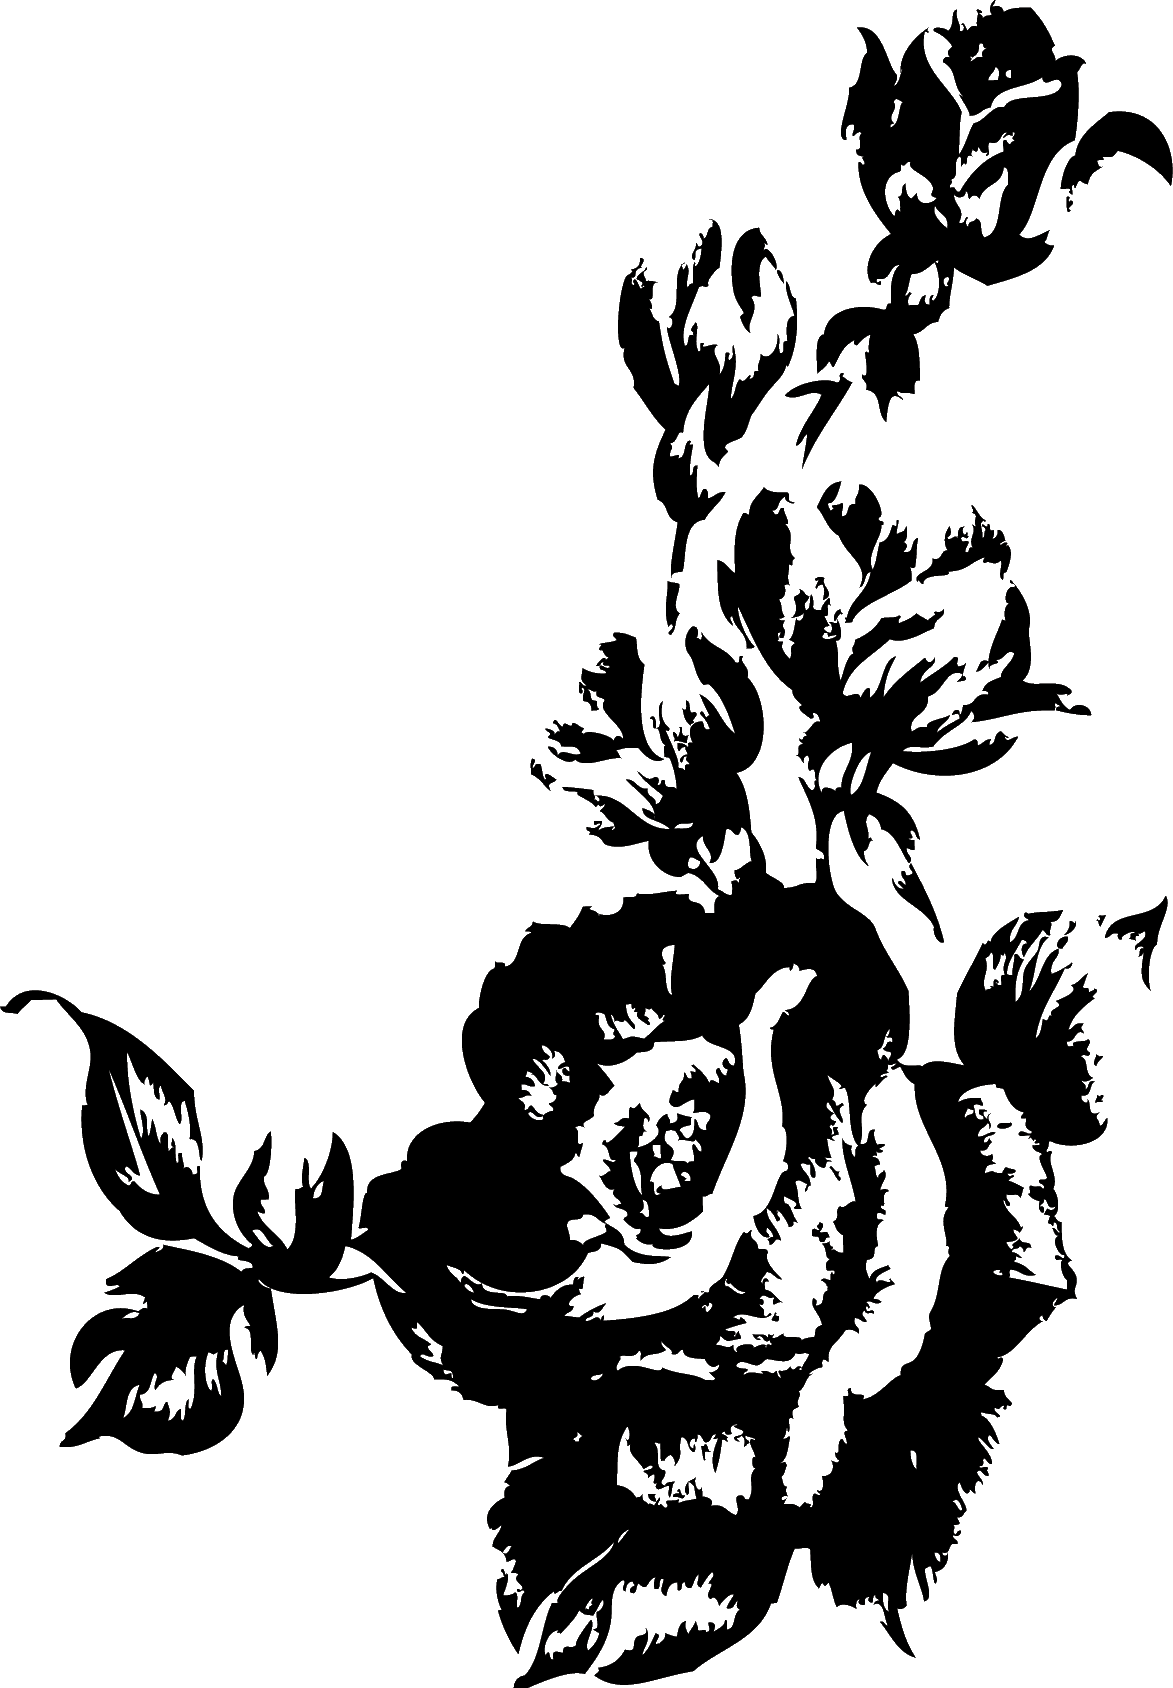 リアルな花のイラスト フリー素材 白黒 モノクロno 1977 版画風のバラ